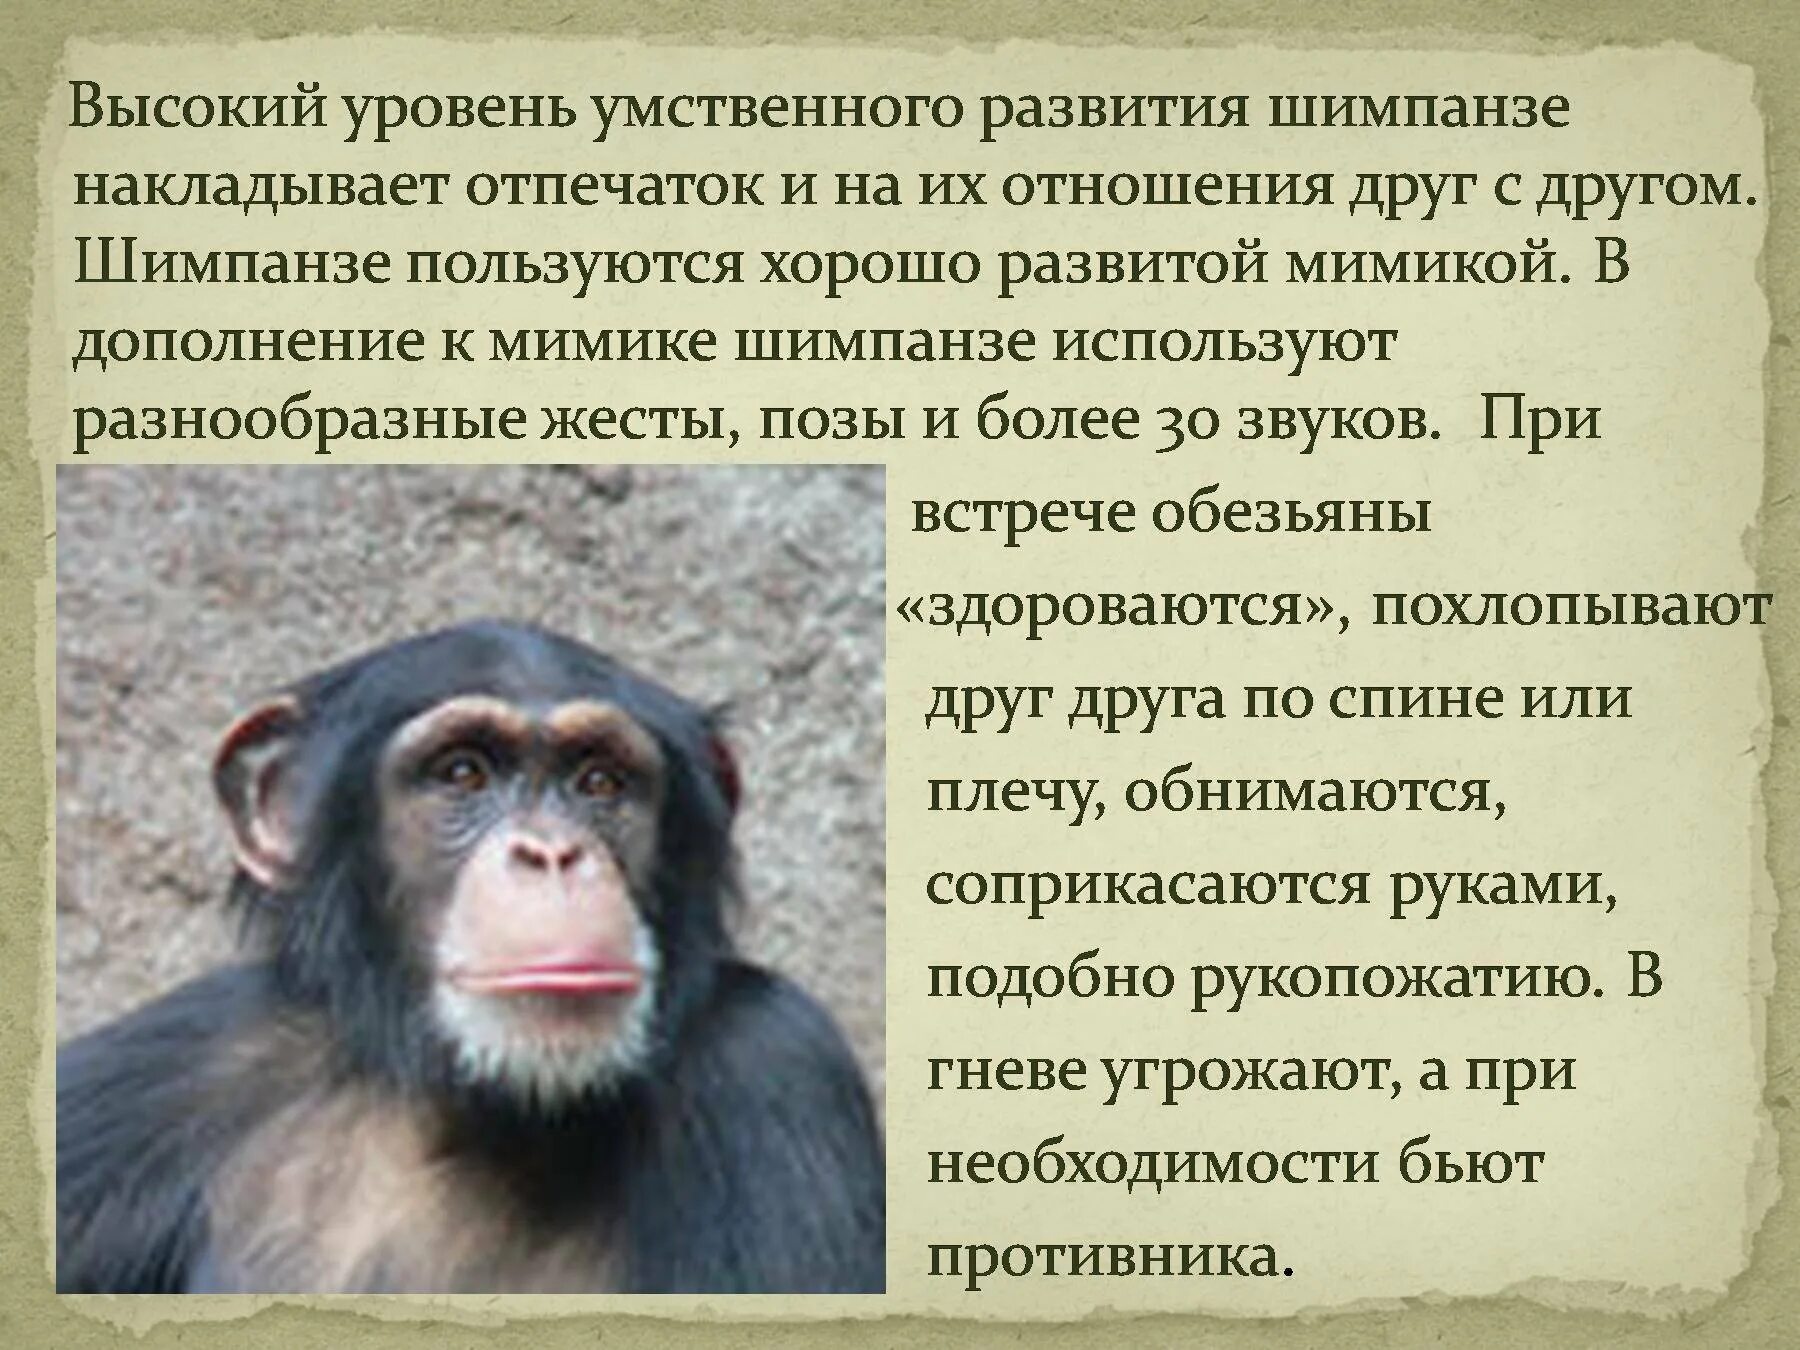 Краткий пересказ обезьяна. Интересные факты про обезьян. Описание обезьяны. Интересные факты о шимпанзе. Статью об обезьянах.